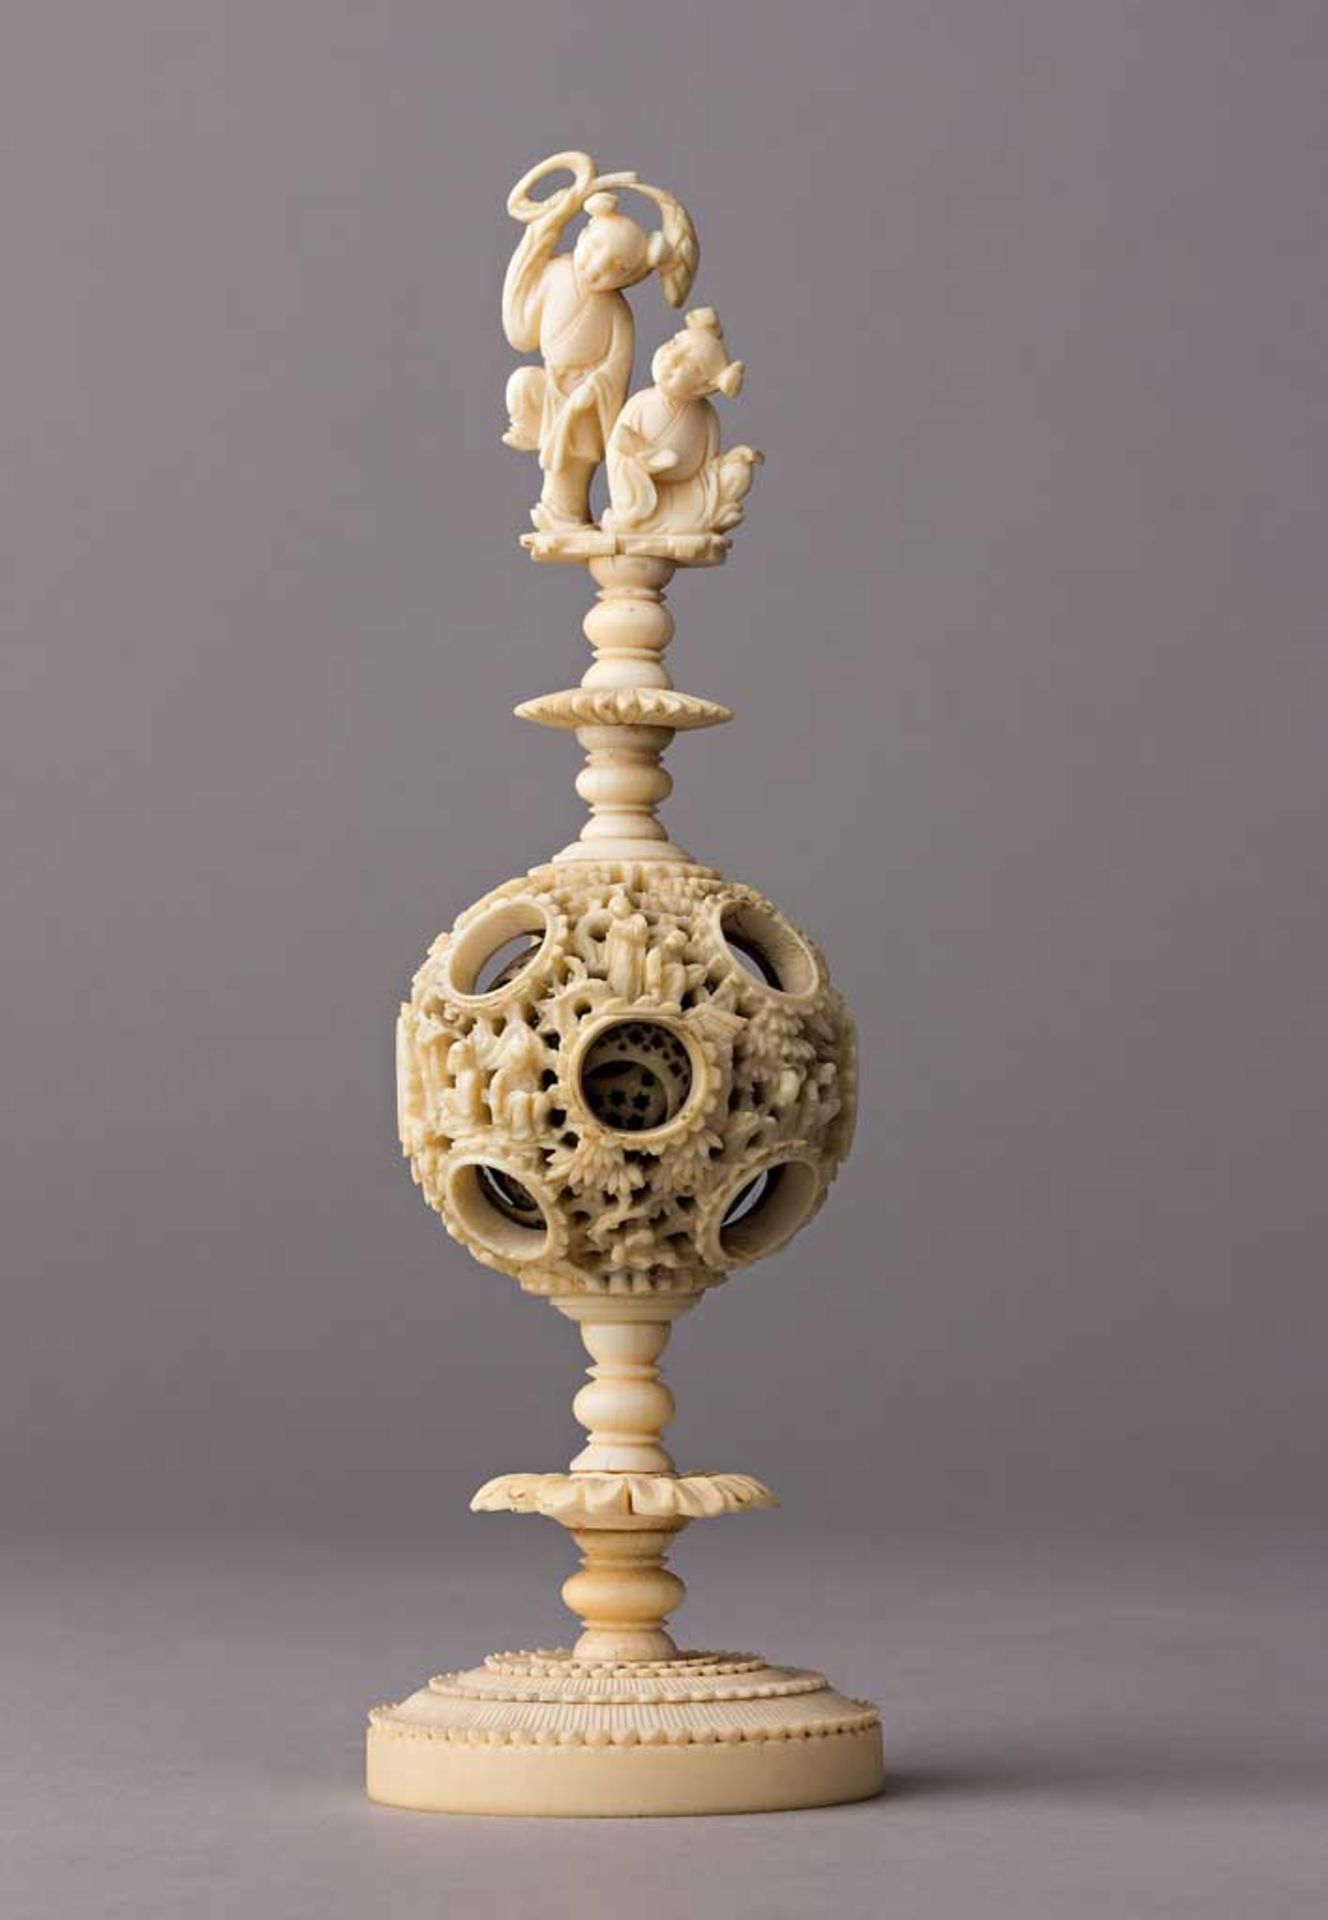 Elfenbein-Mirakelkugel mit figuralem Aufsatz: spielende Kinder. China, frühes 19. Jh. H 19 cm